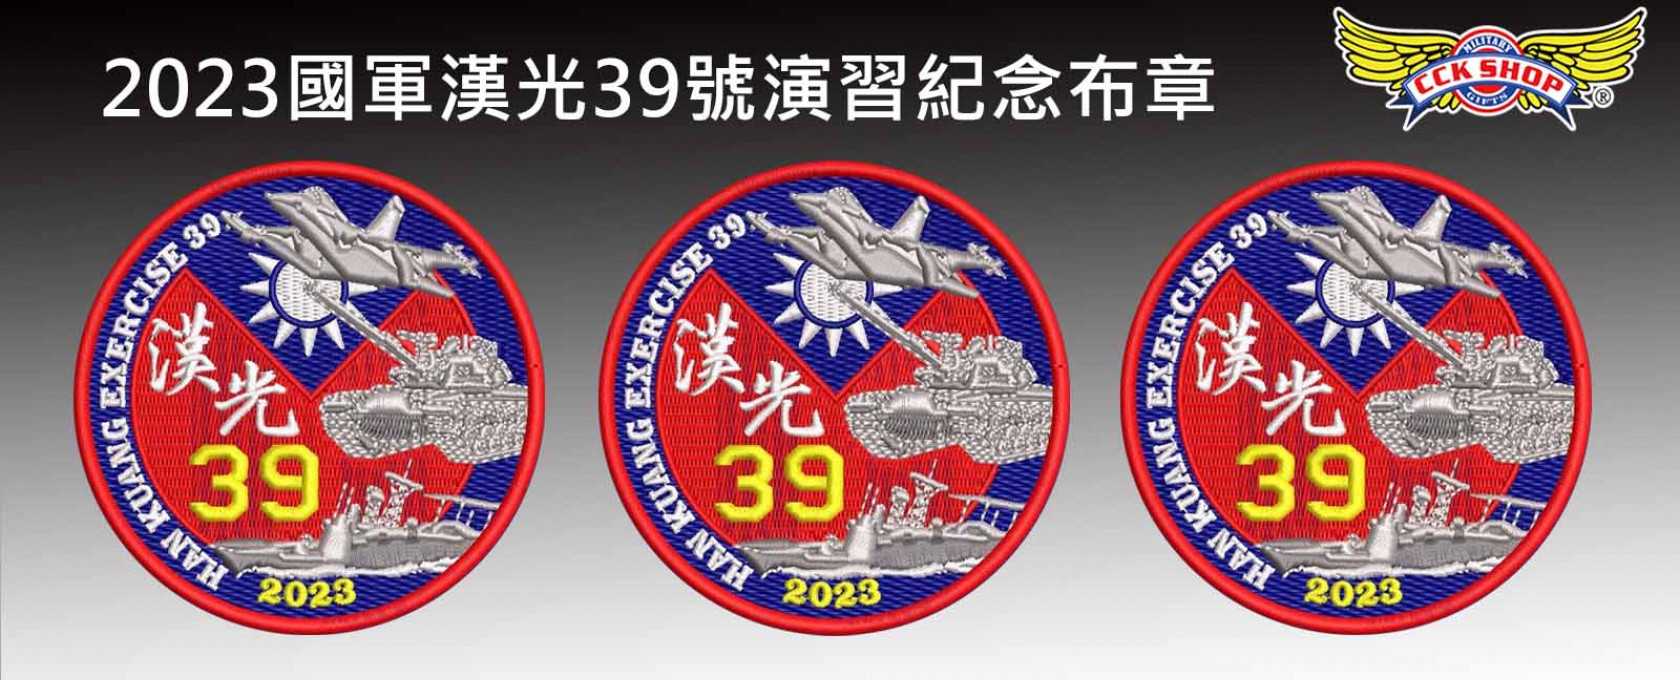 2023 國軍漢光39號演習 紀念 電繡布章~預購